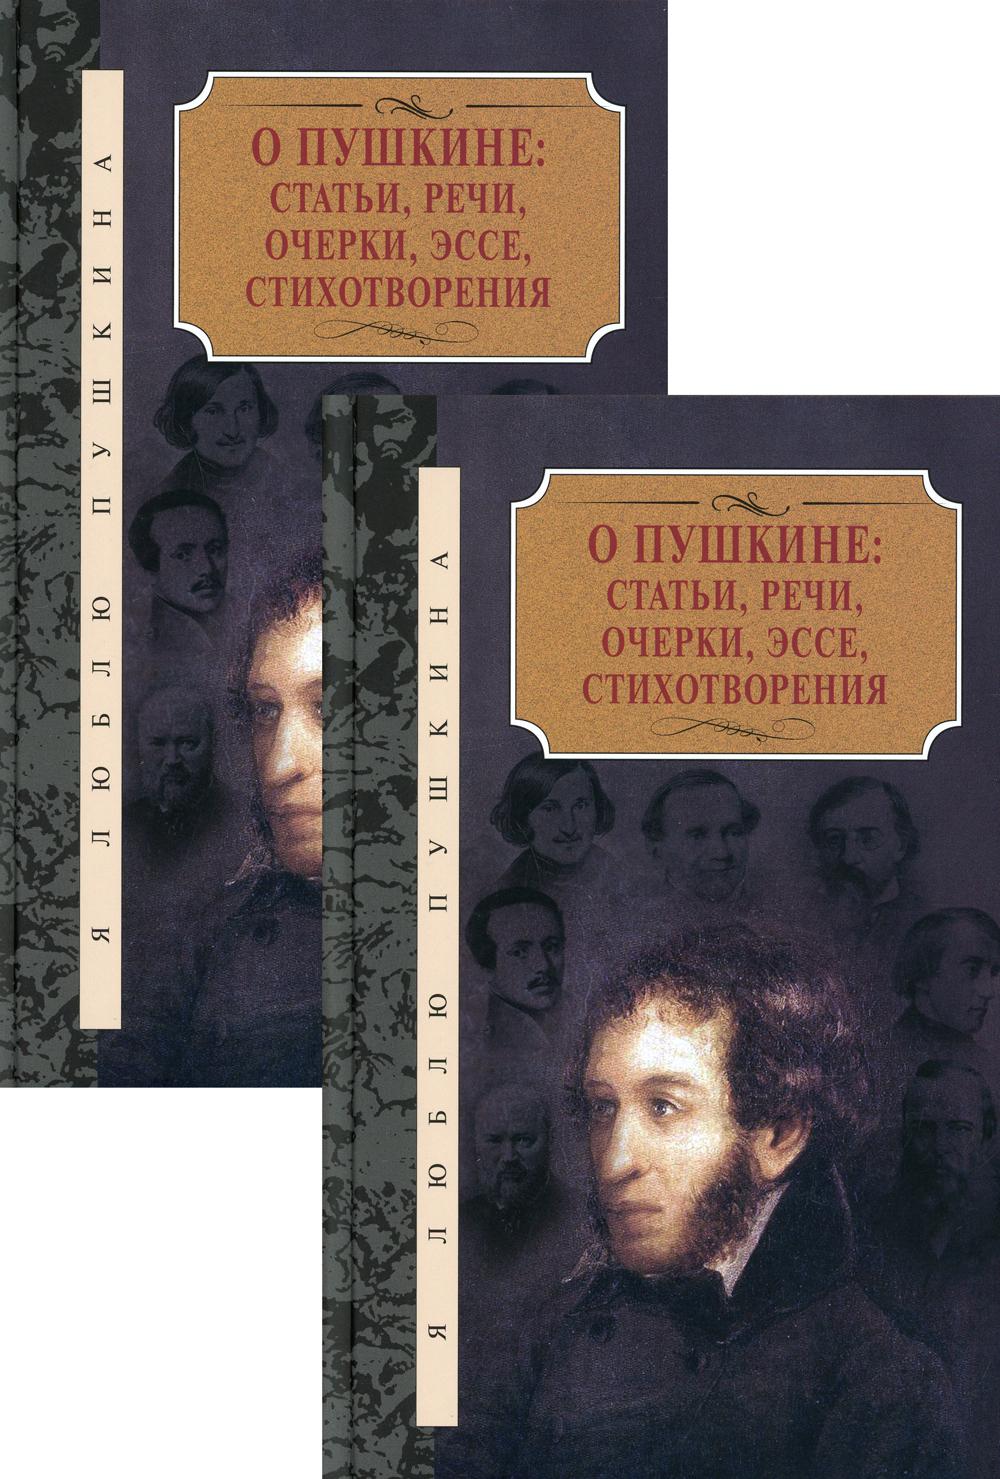 О Пушкине: Статьи, речи, очерки, эссе, стихотворения. В 2 томах